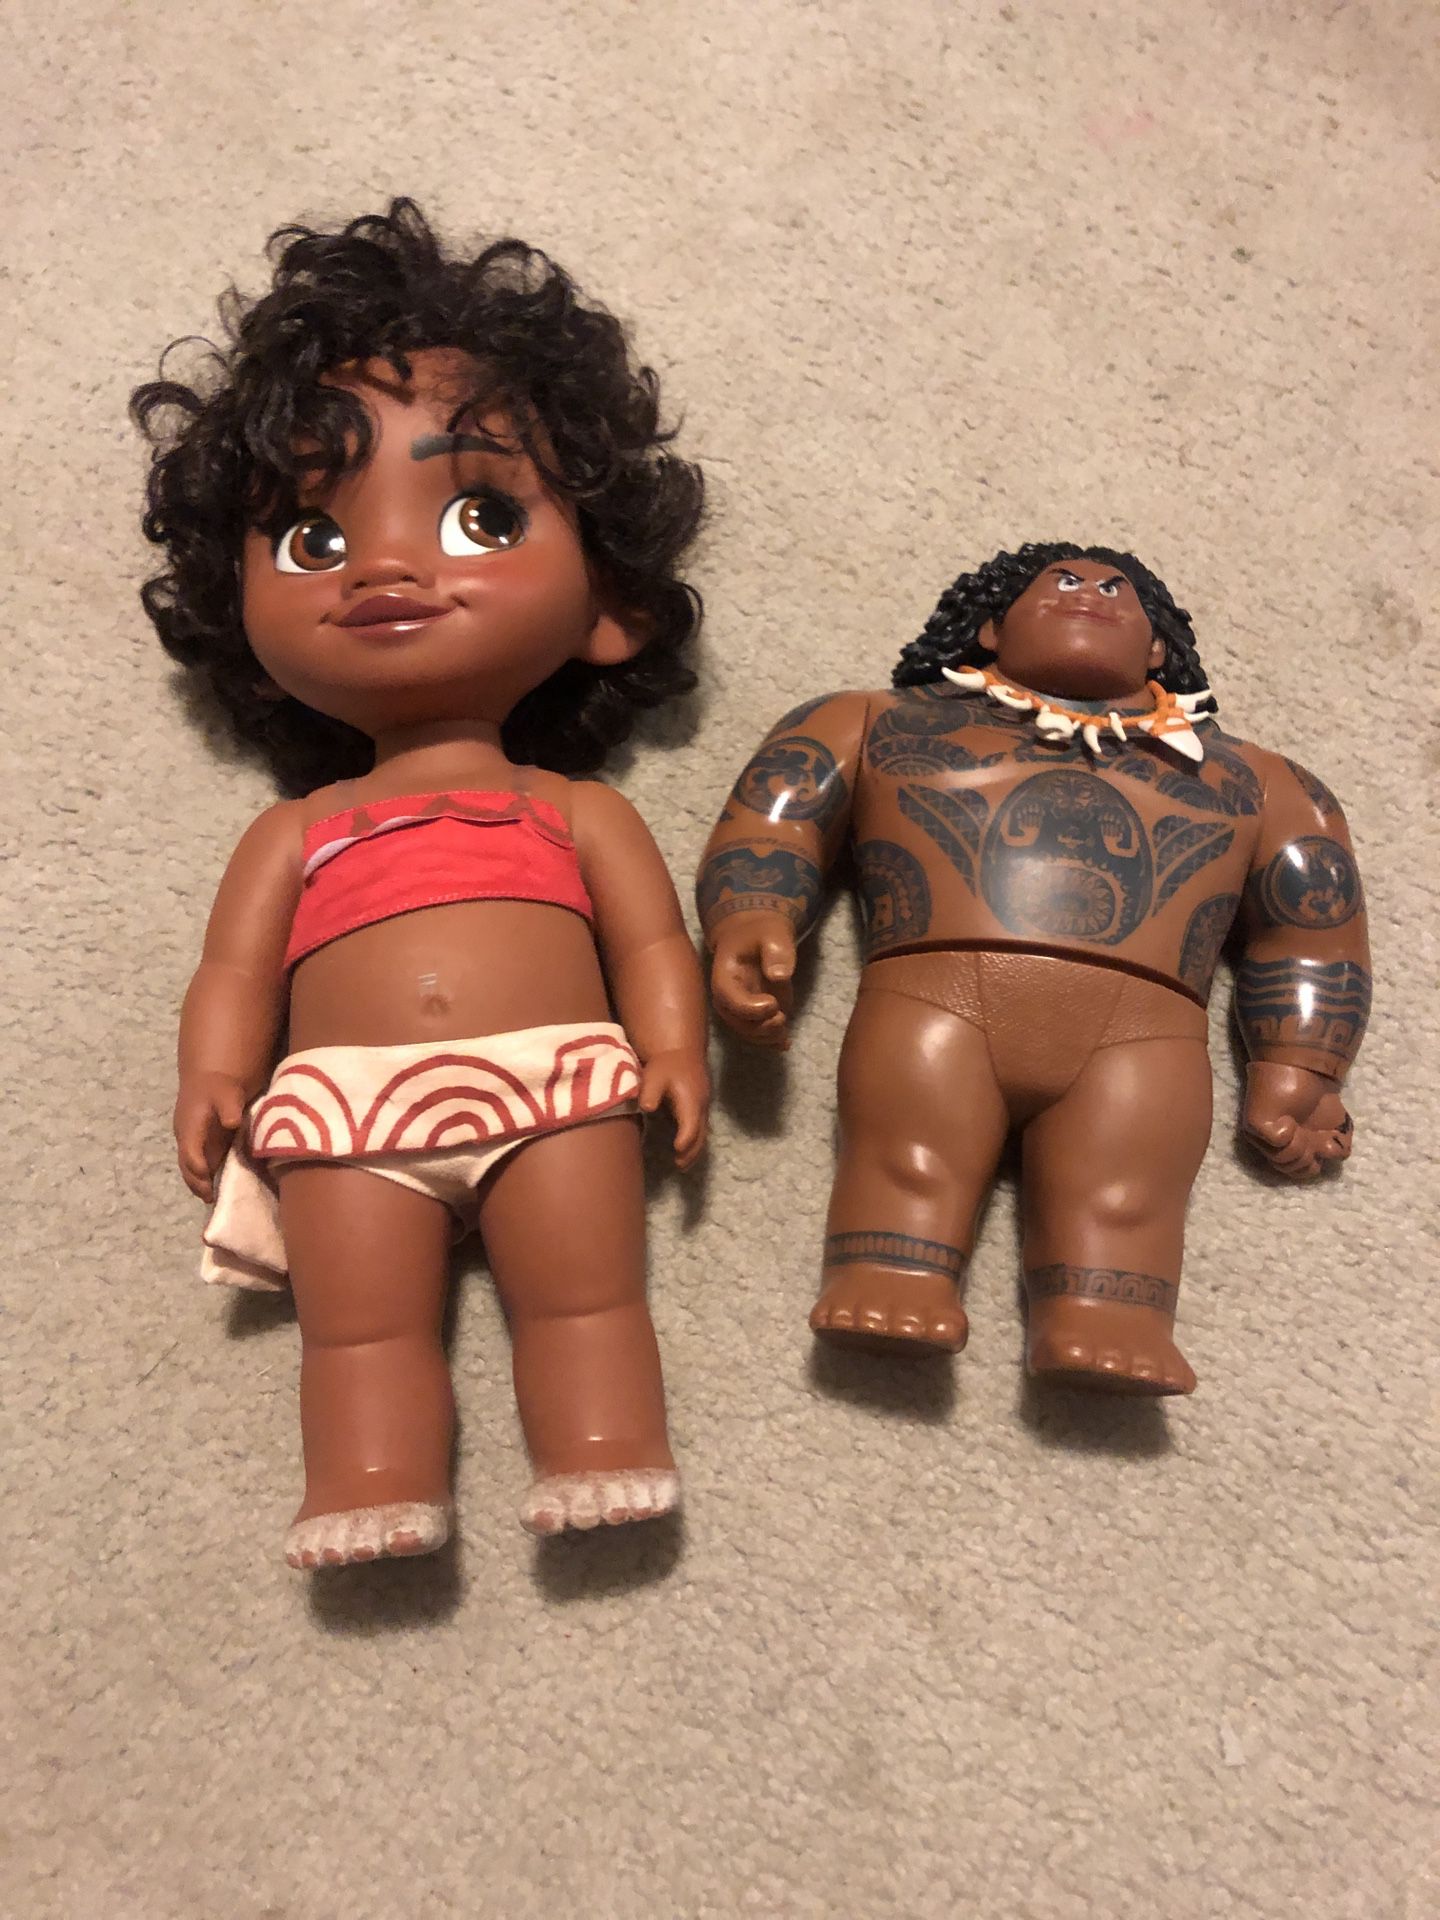 Moana and Maui dolls